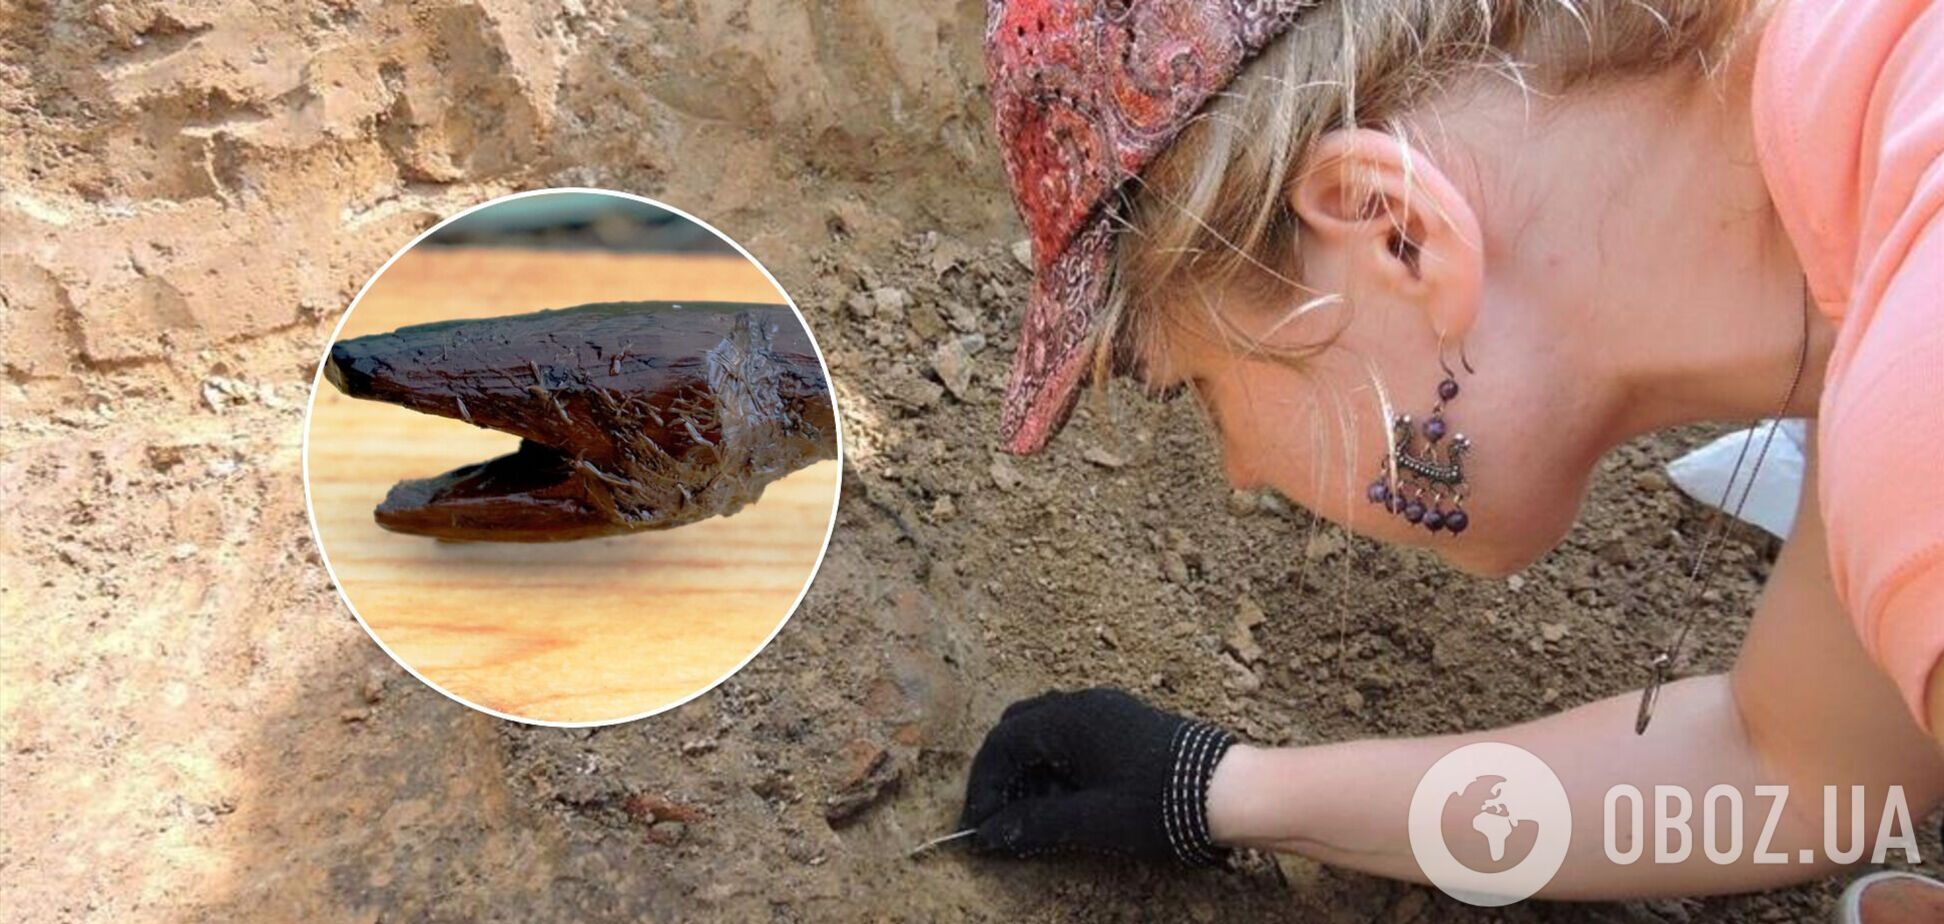 Археологи знайшли у Фінляндії 'зміїний посох' шамана, якому 4400 років. Фото